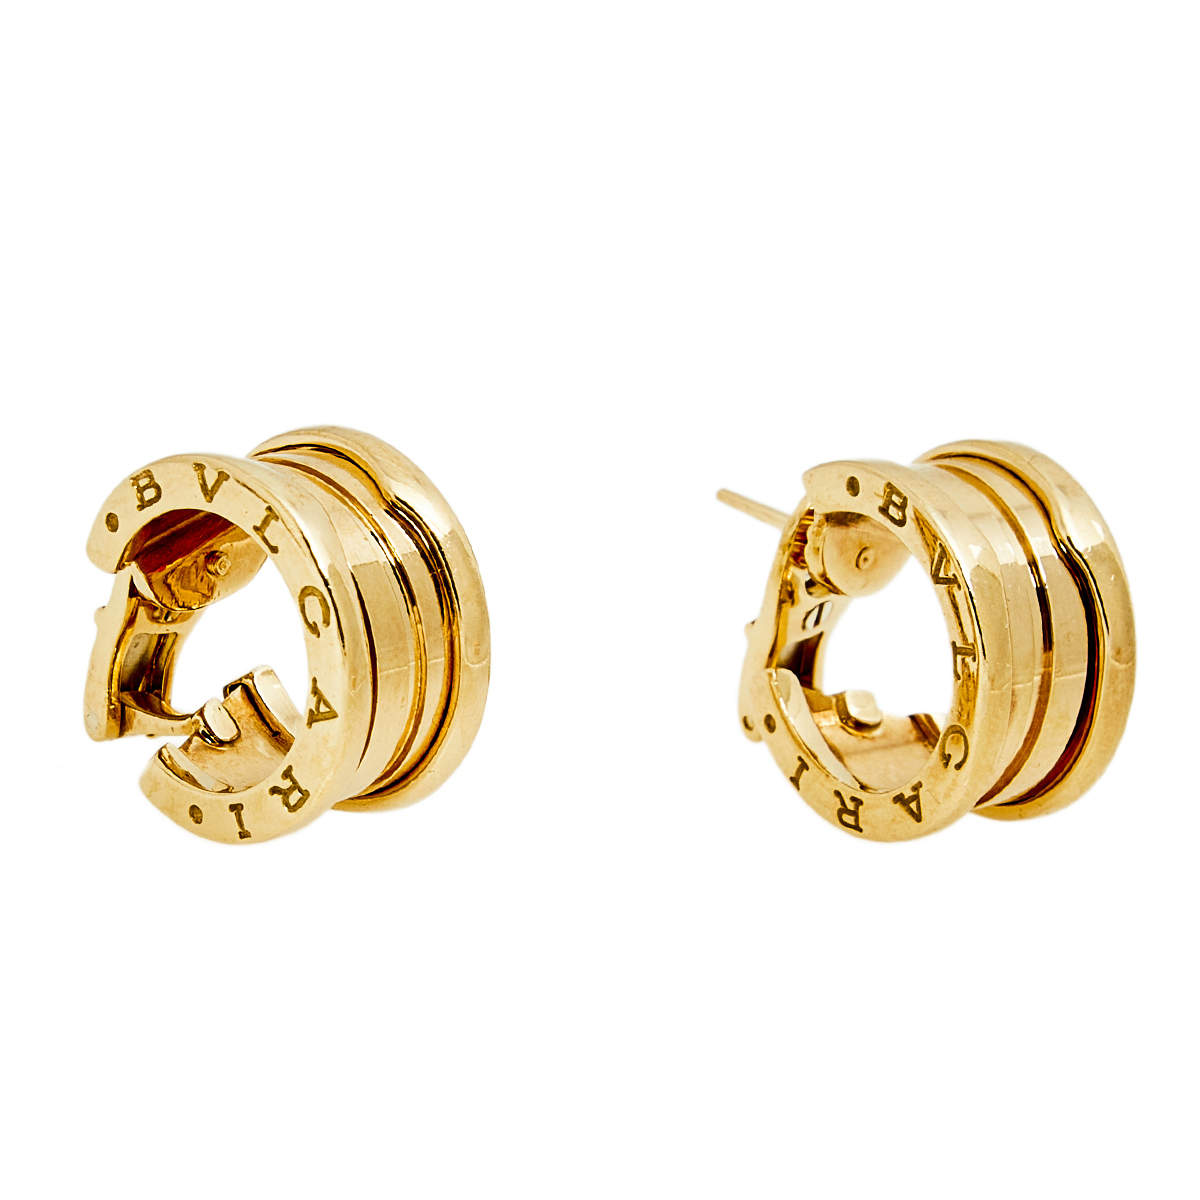 USED] BVLGARI Bulgari Bulgari J346295 Earrings | jewelryのゆきざき - J346295